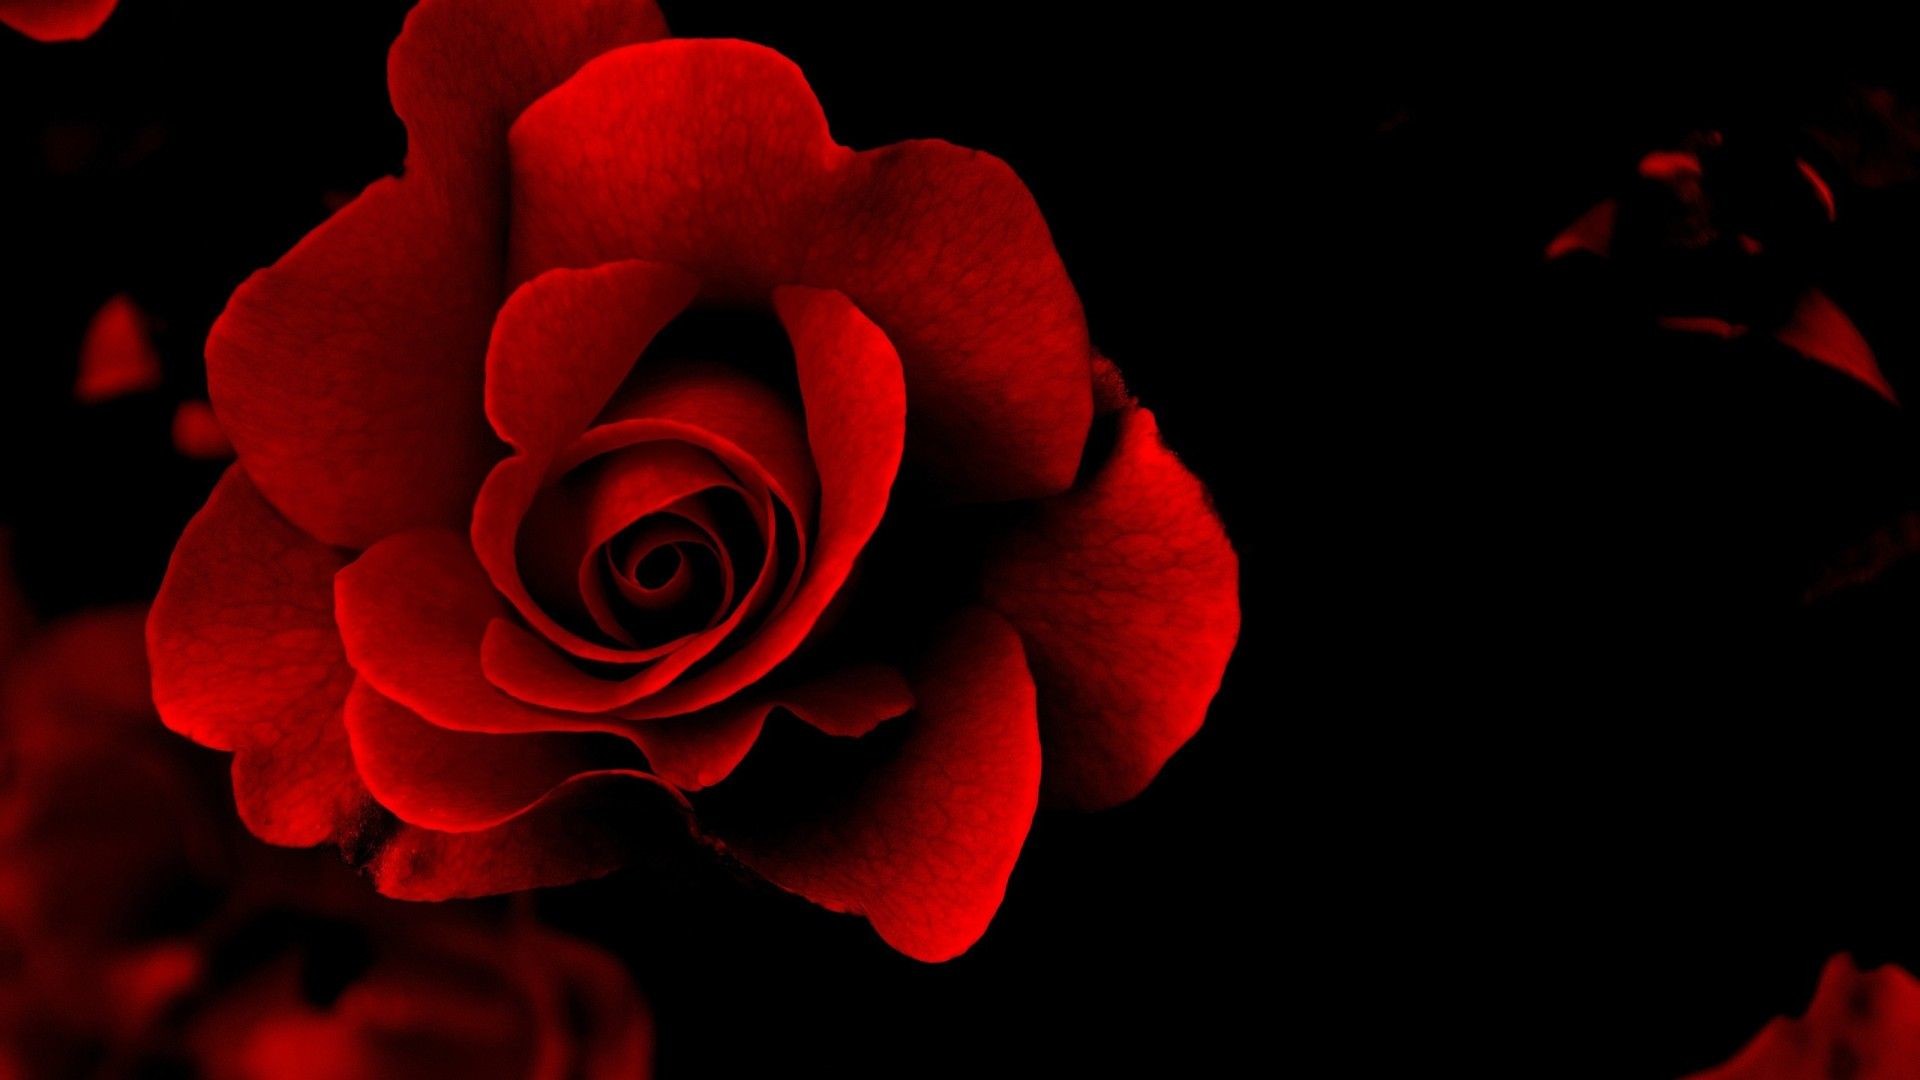 300 Free Red Rose Black  Rose Images  Pixabay